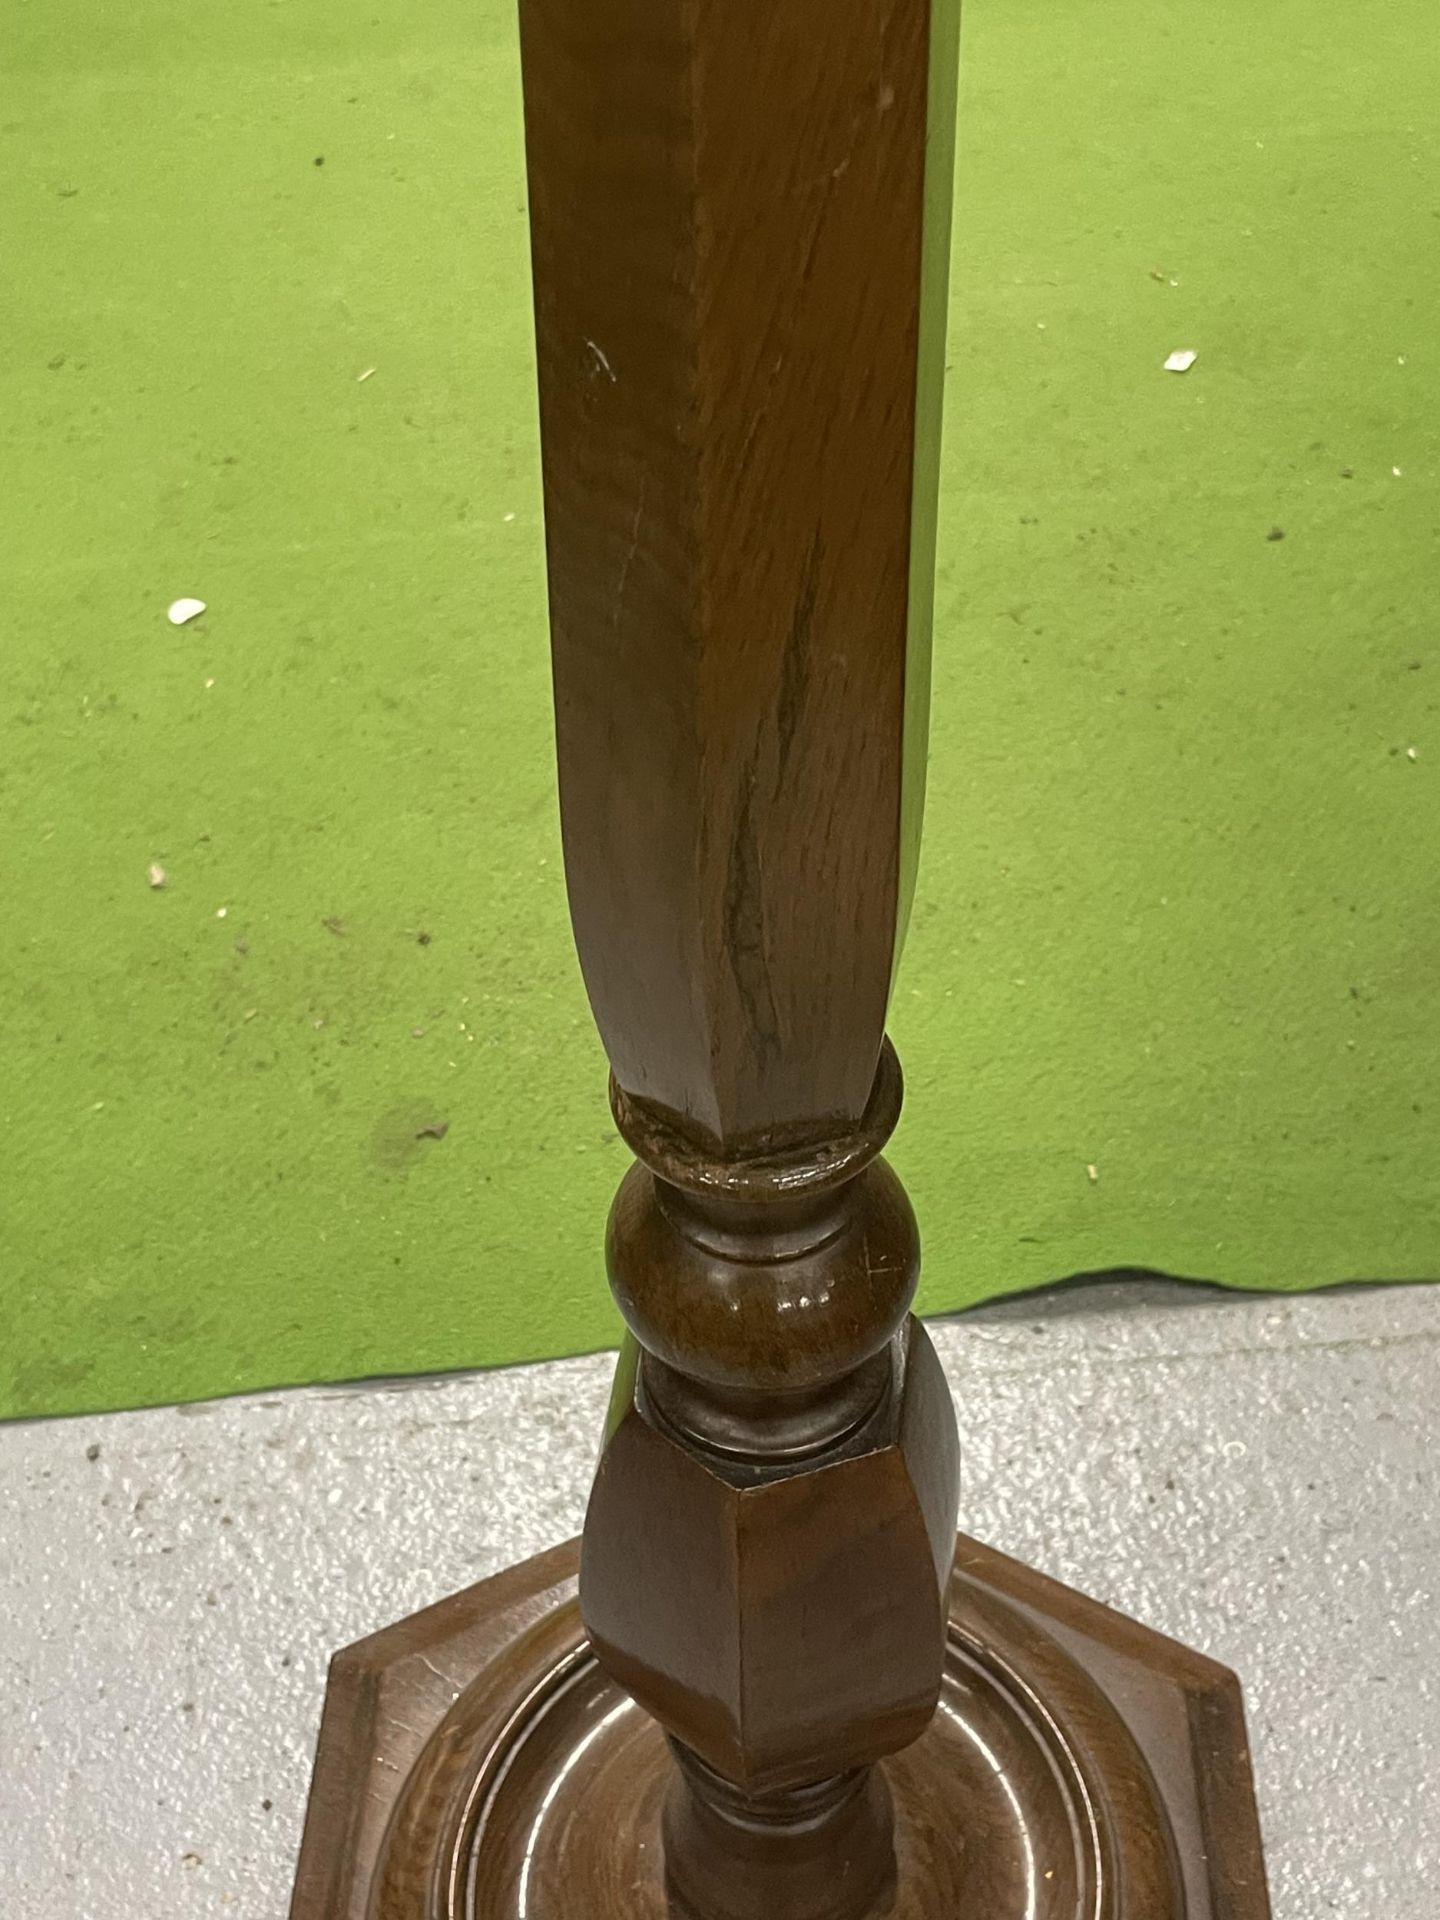 A TALL VINTAGE MAHOGANY STANDARD LAMP + SHADE - Image 3 of 4